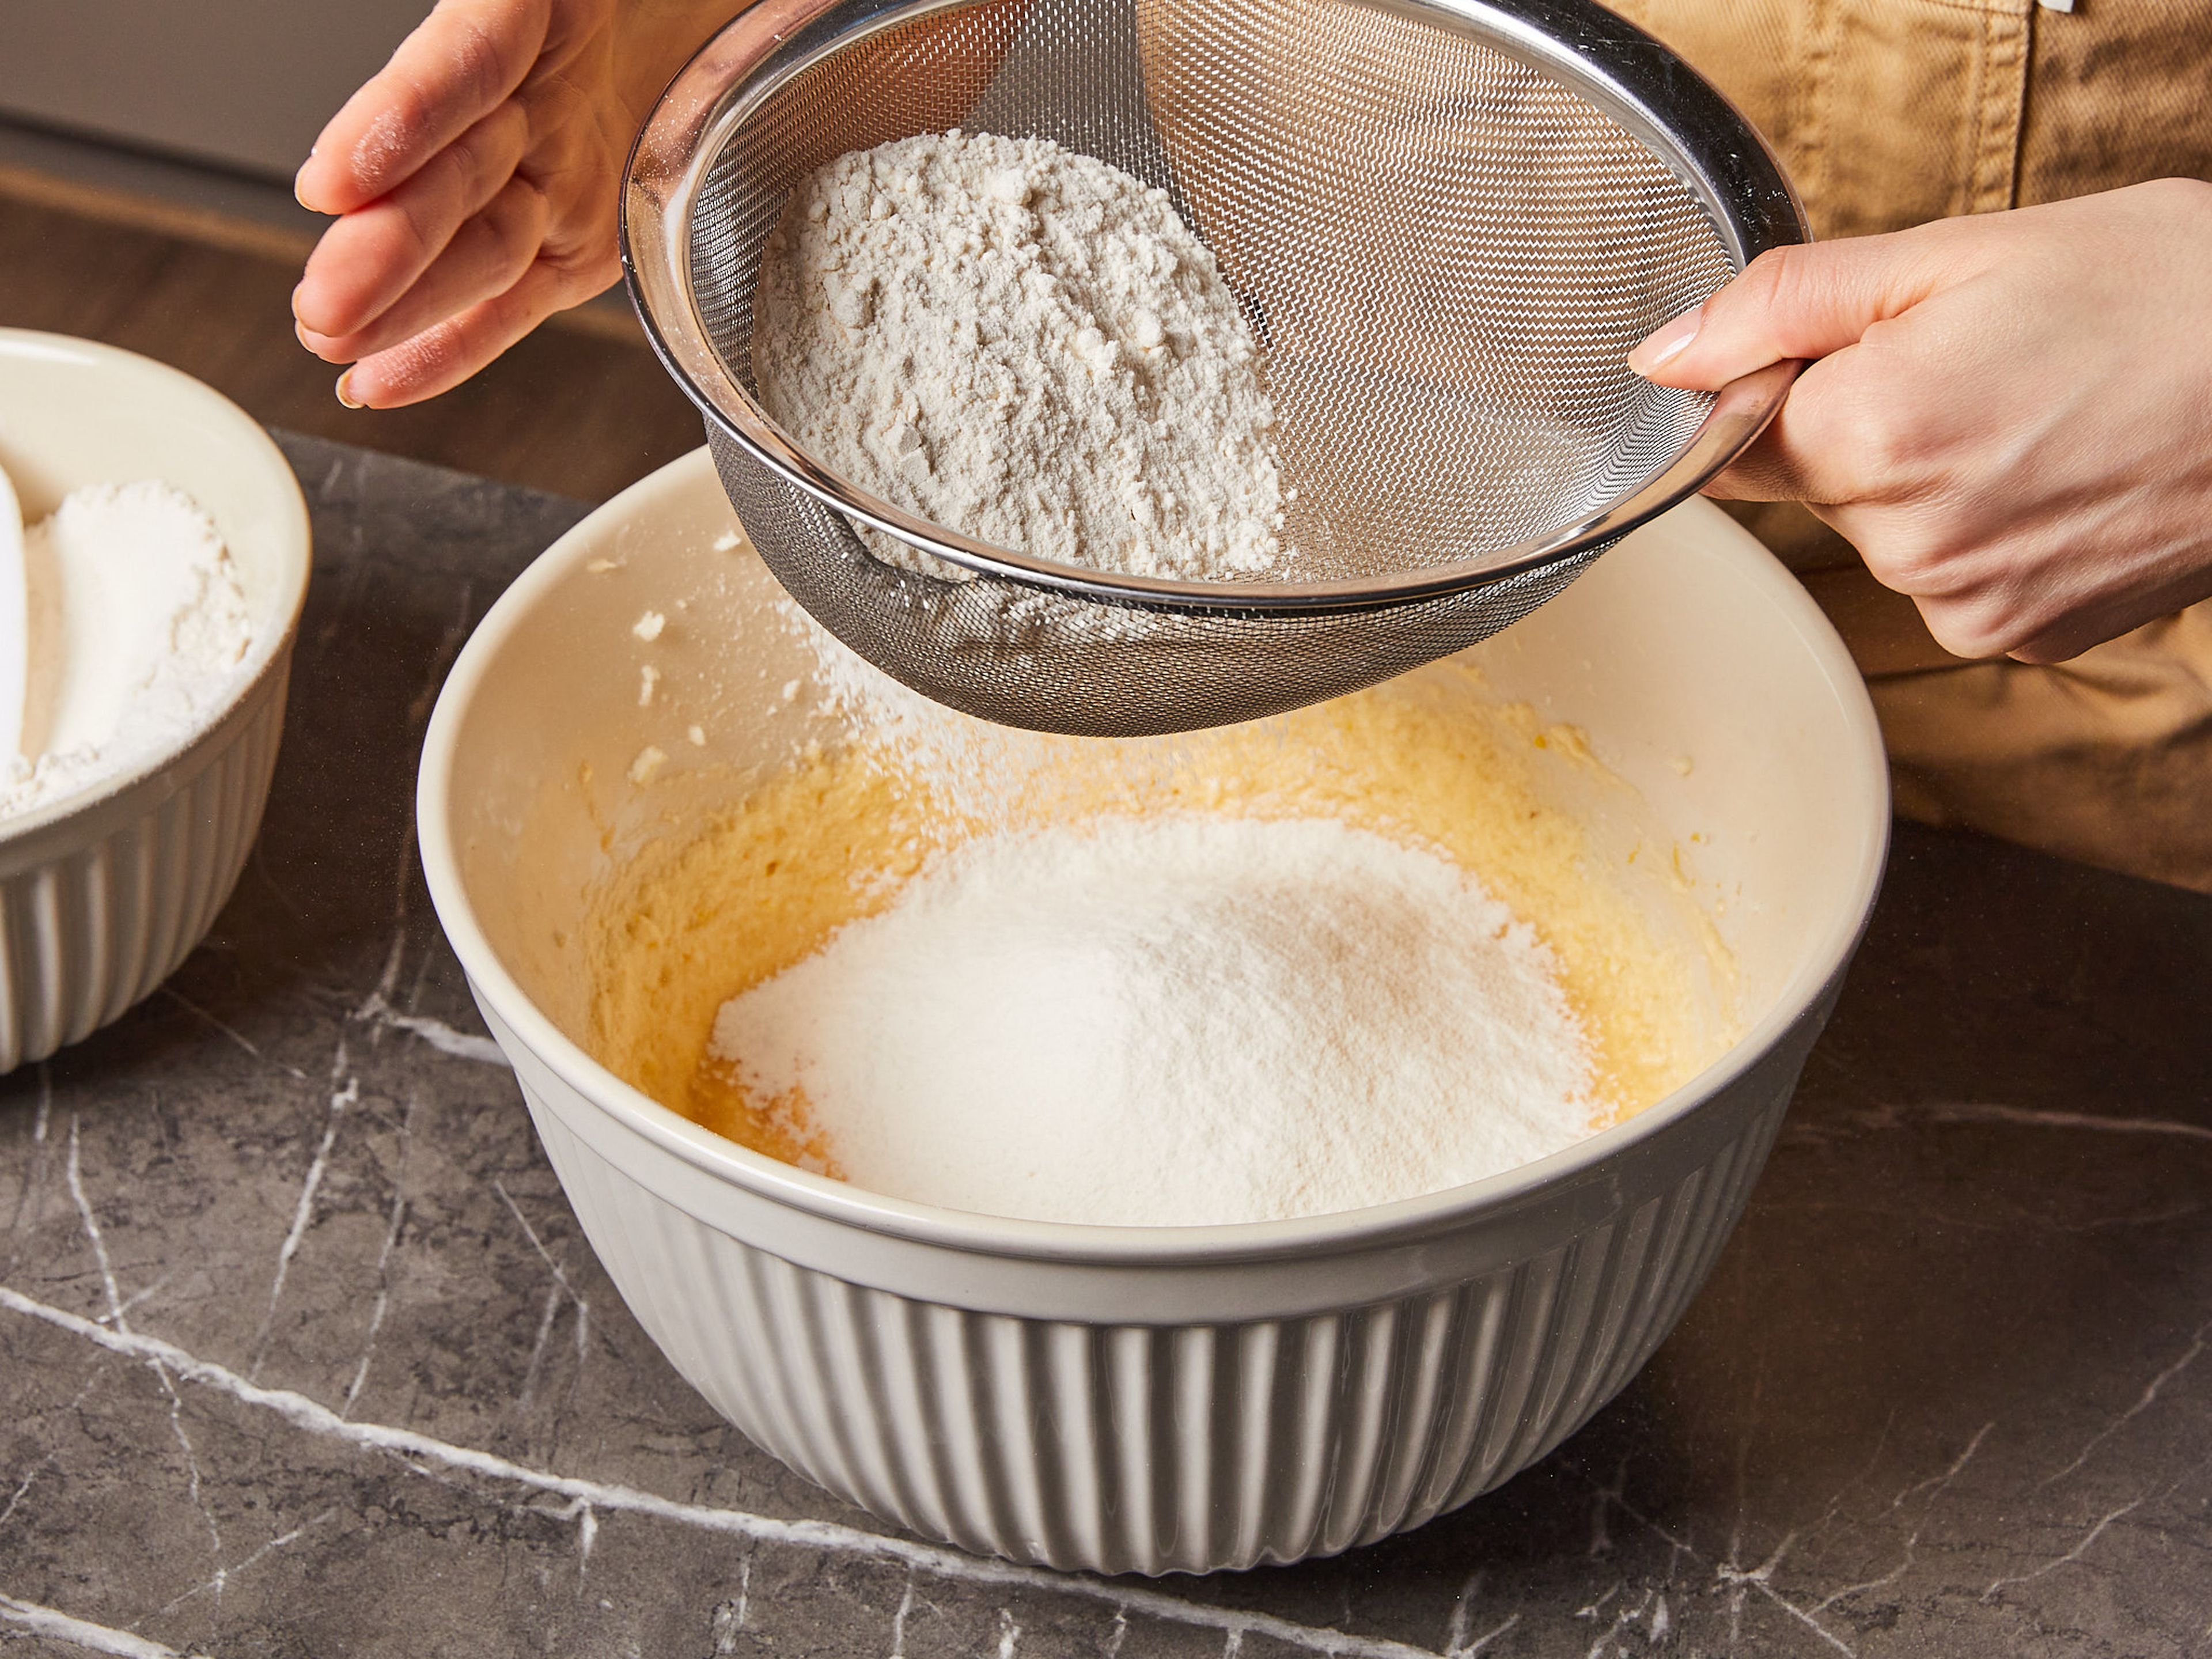 Das Mehl, Backpulver und Salz mischen und einsieben. Dann die Milch hinzugeben und alles nochmals kurz verrühren, bis ein zähflüssiger Teig entsteht.